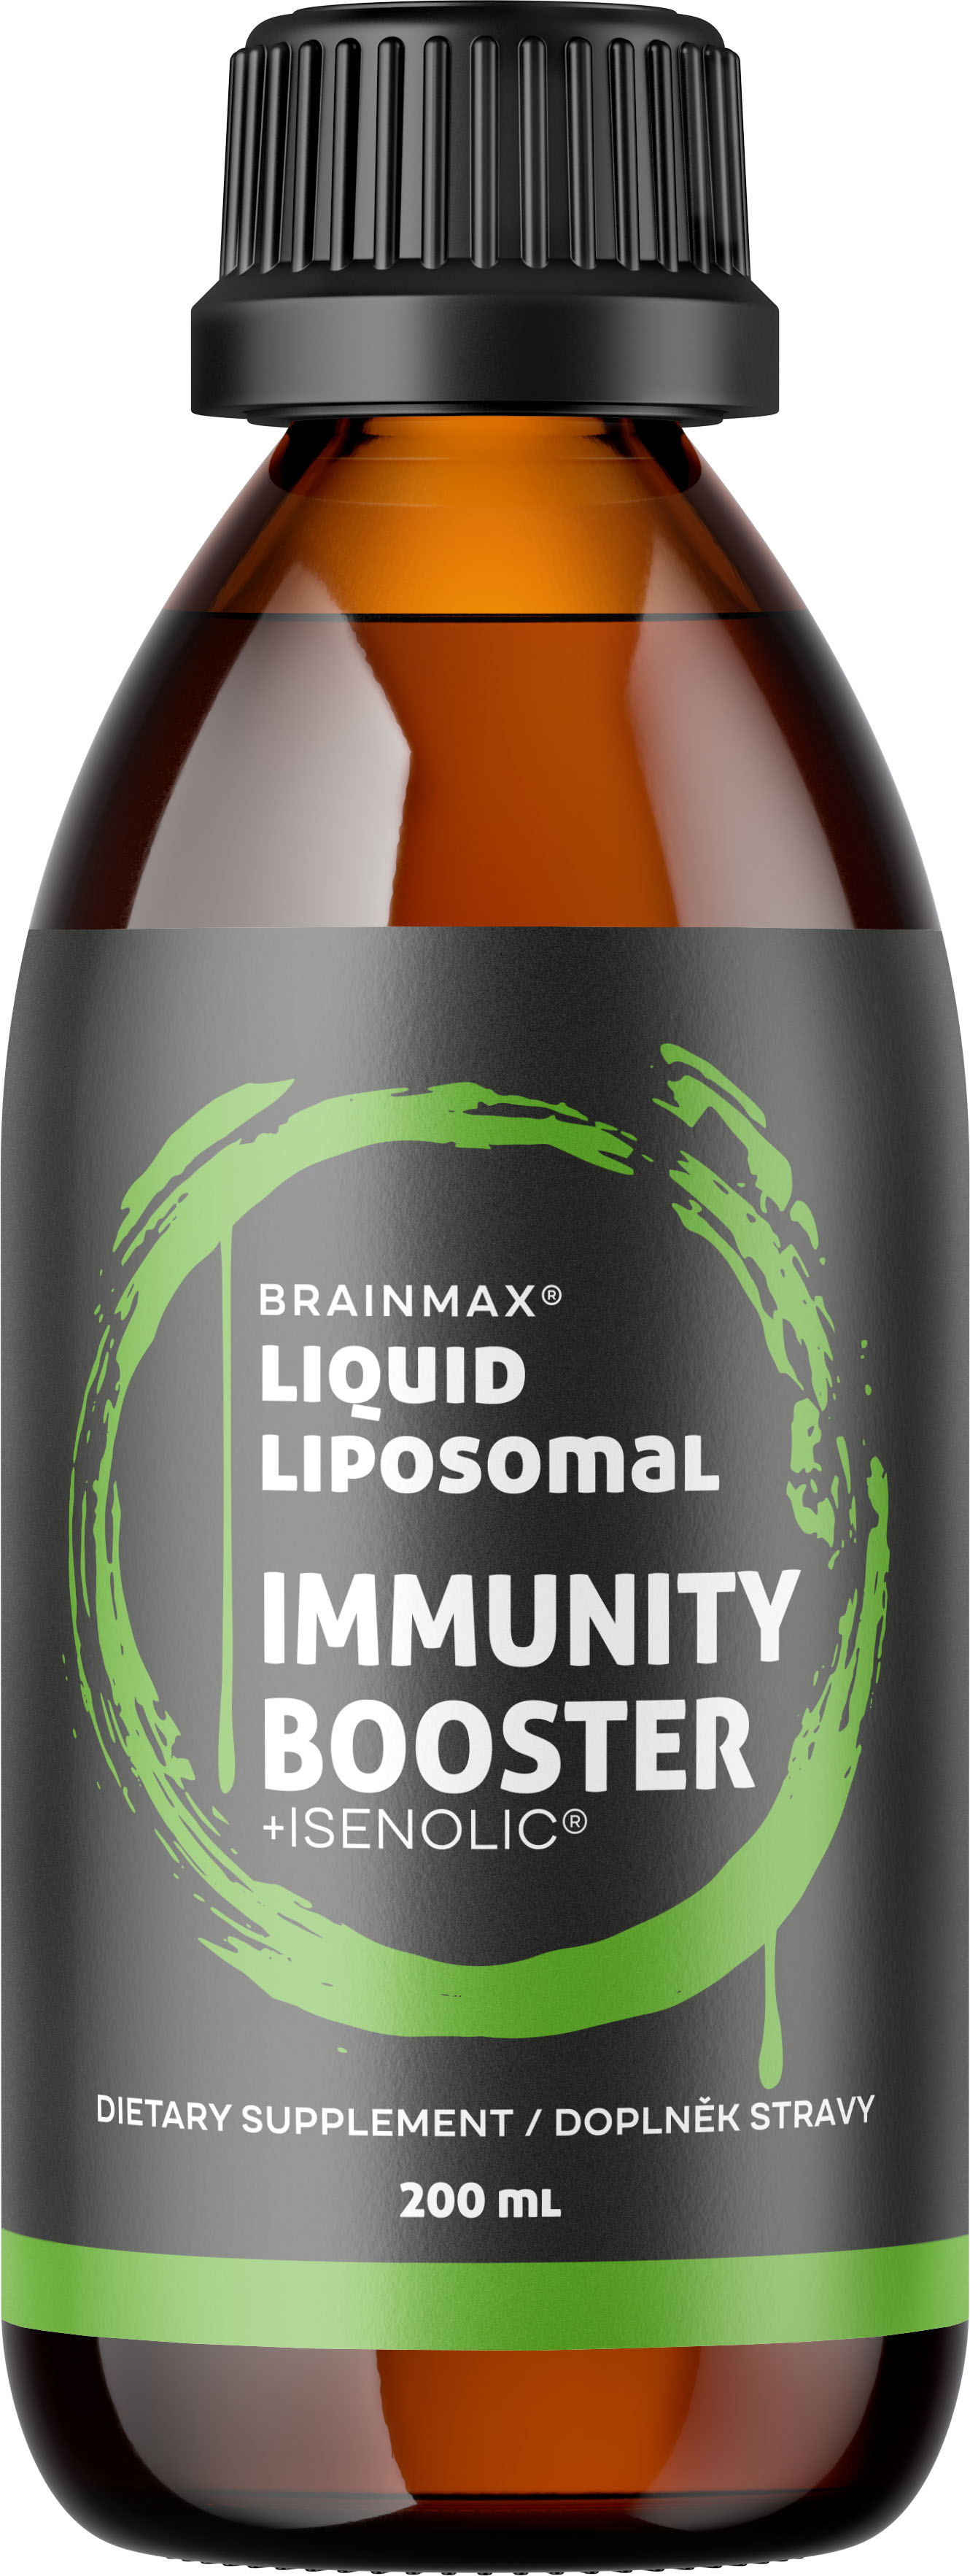 BrainMax Lipozomální komplex pro podporu imunity, ISENOLIC®, 200 ml BrainMax Liquid Liposomal Immunity Booster, doplněk stravy